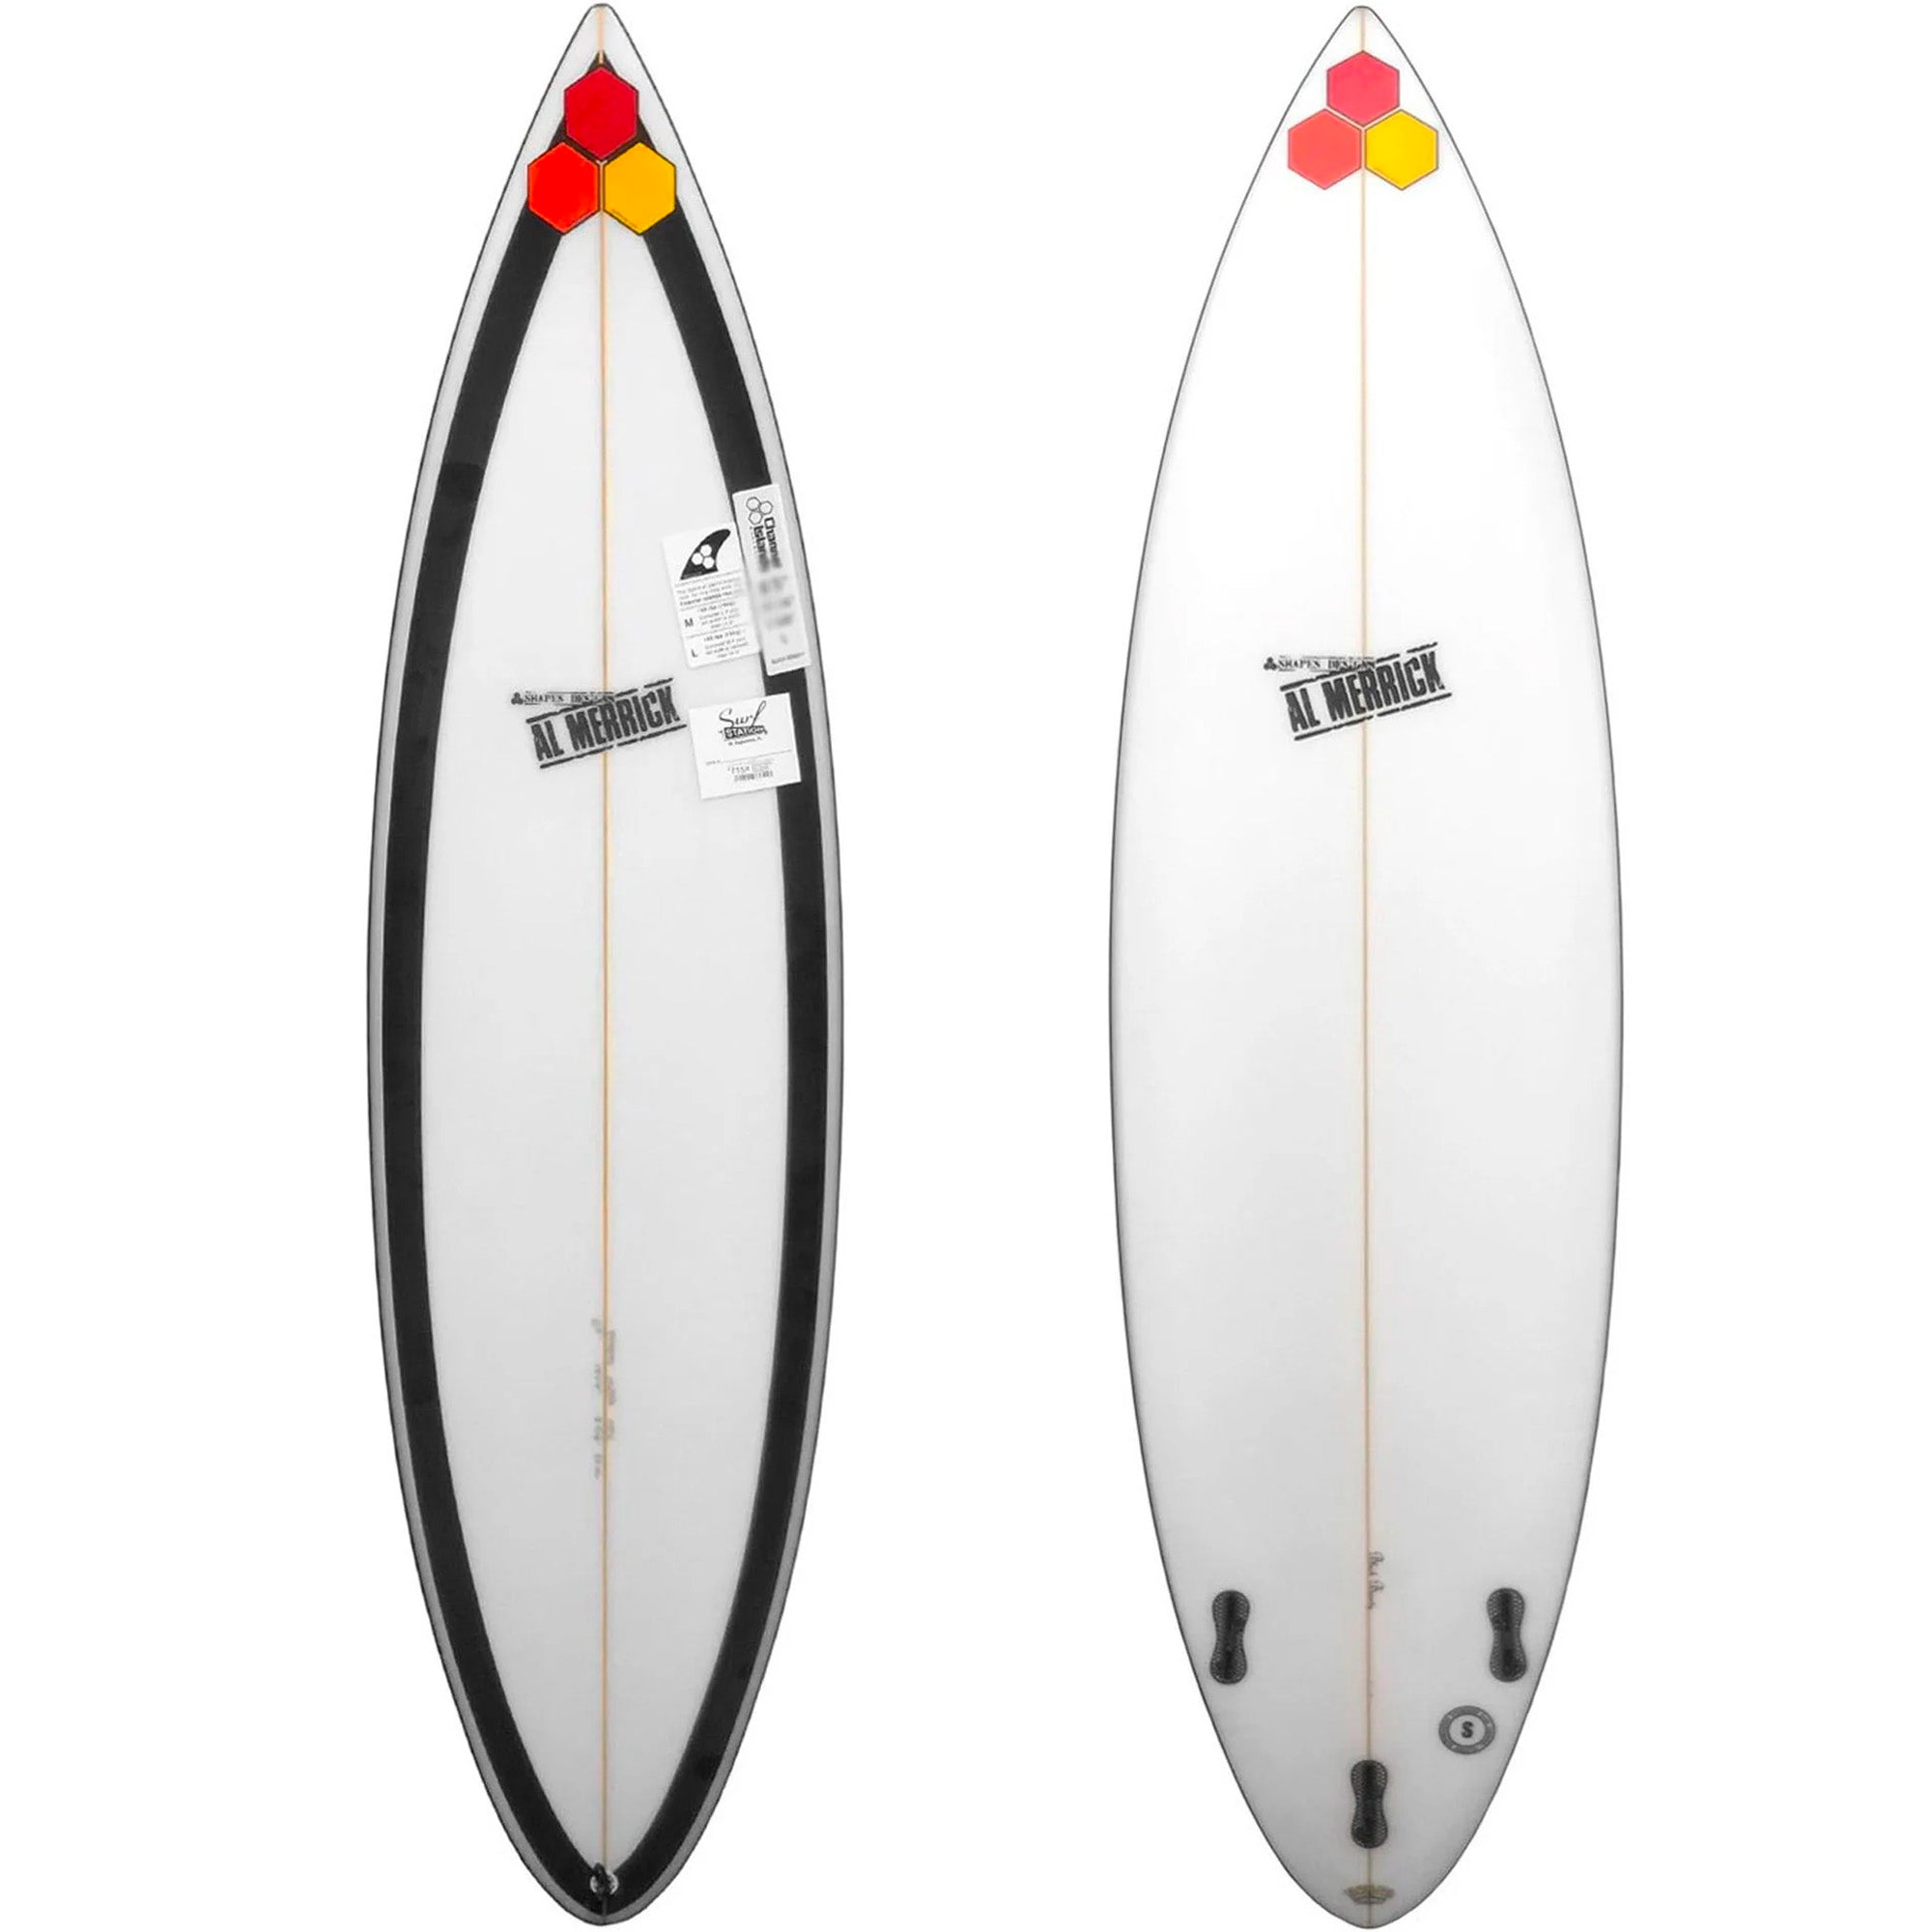 Channel Islands Black Beauty Surfboard - FCS II